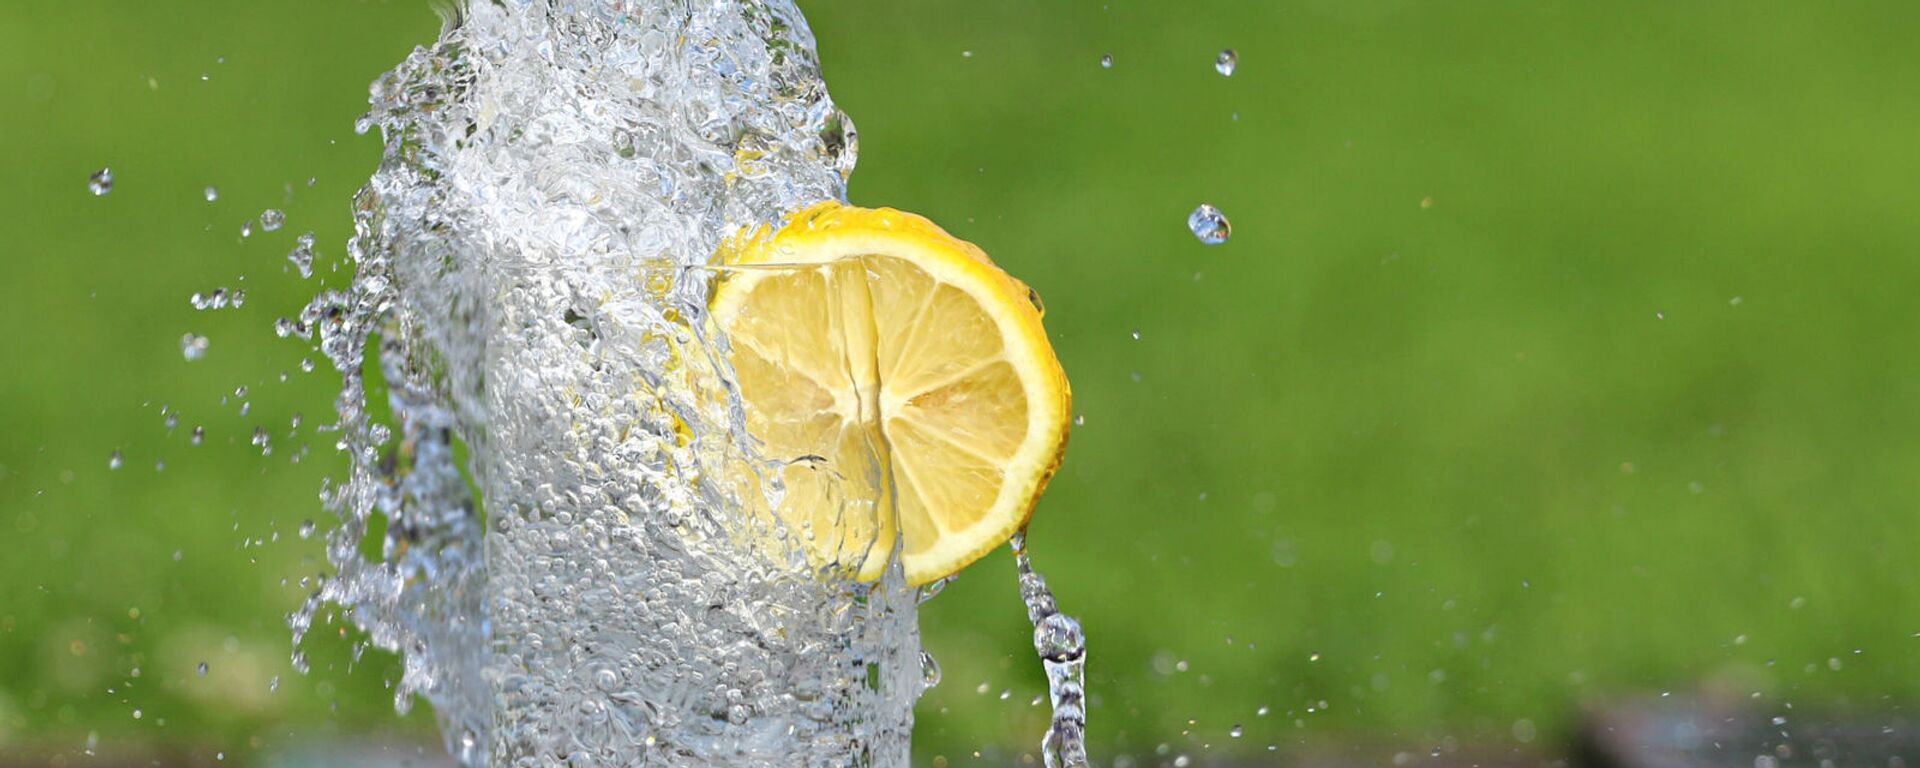 Холодная вода в бокале с долькой лимона - Sputnik Արմենիա, 1920, 10.06.2021